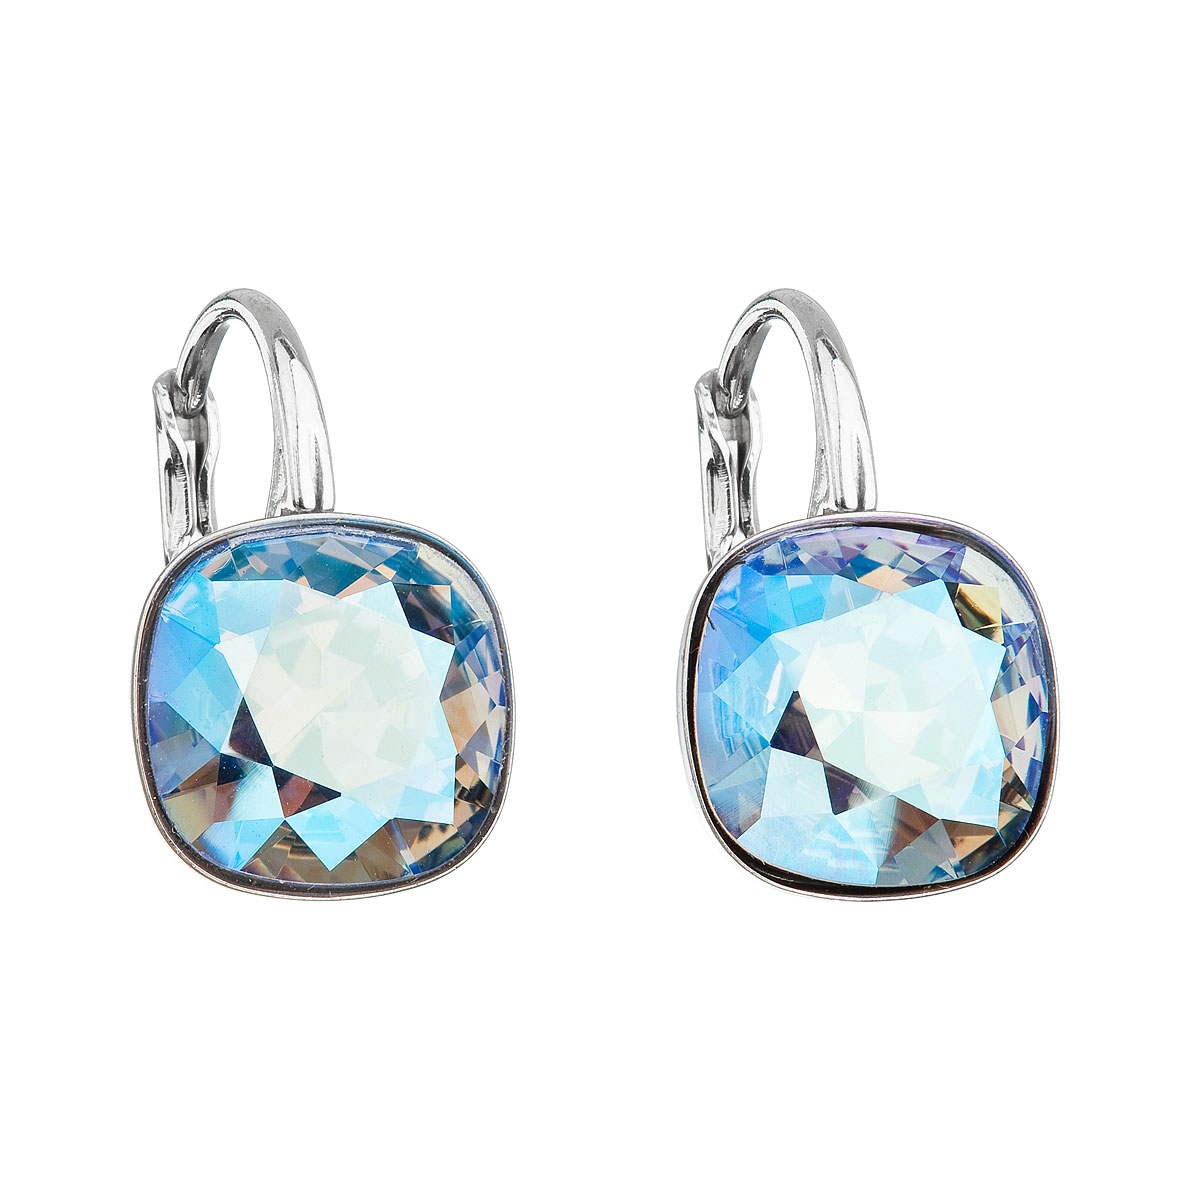 Strieborné náušnice štvorec s kameňmi Crystals from Swarovski ® Sapphire Shimmer